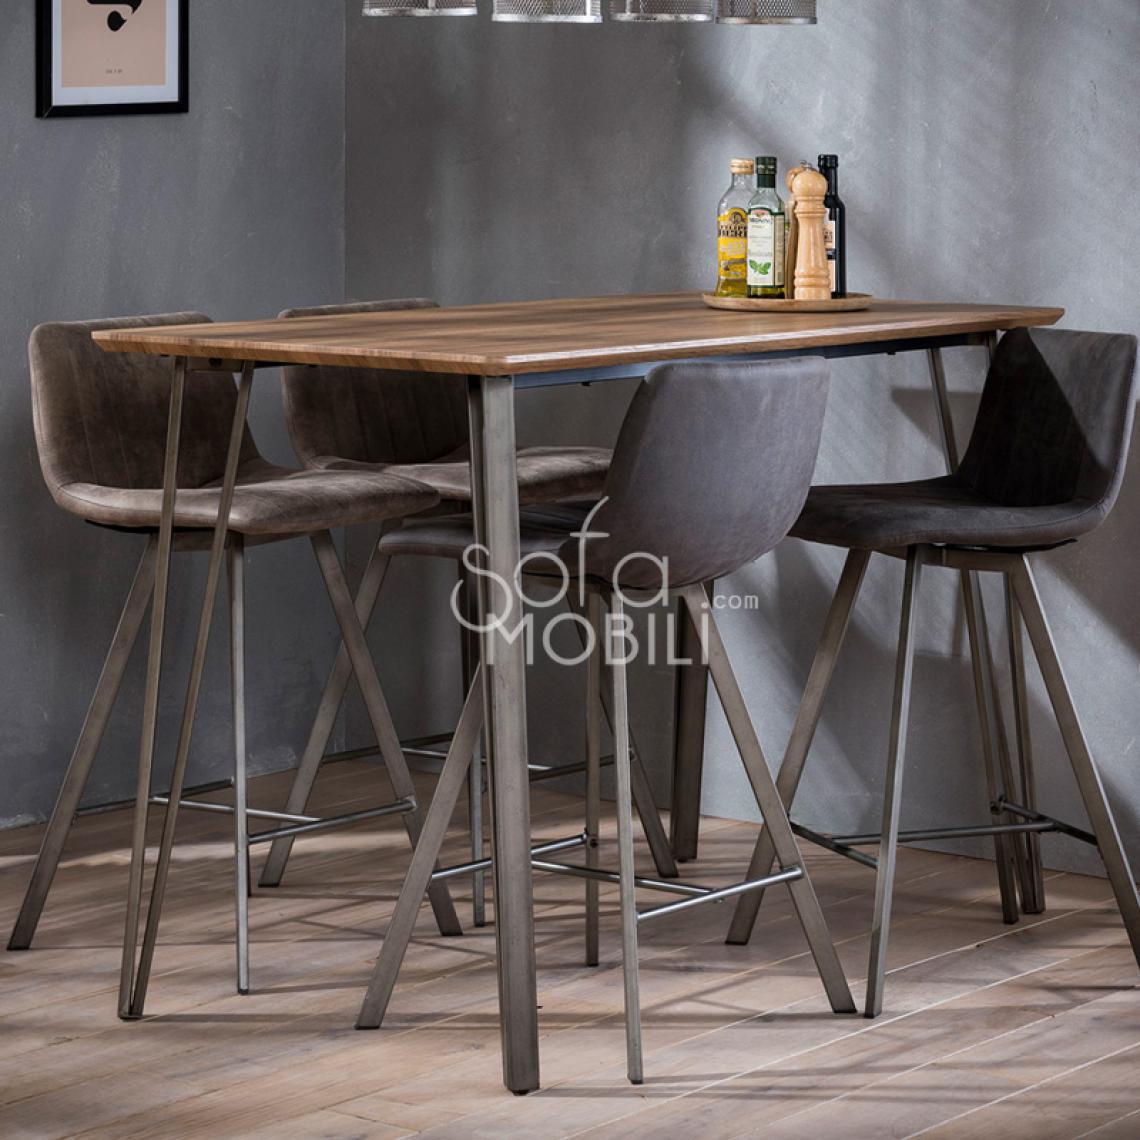 Happymobili - Table haute couleur bois et métal FENDER - Tables à manger